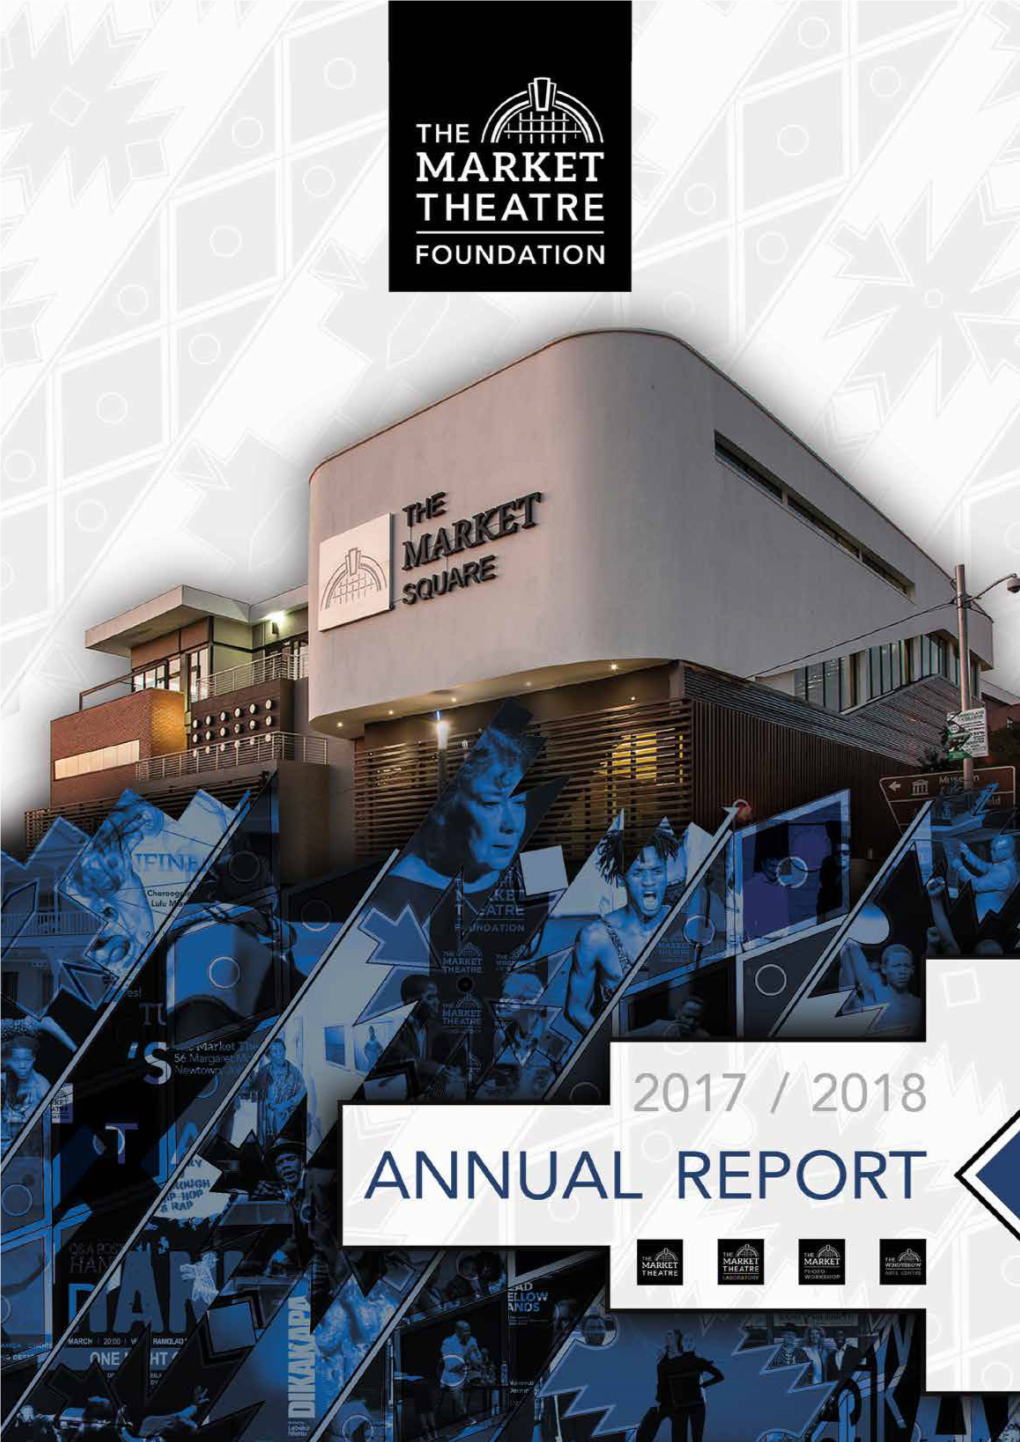 THE MARKET THEATRE FOUNDATION Annual Report 2017-2018 15.06.21